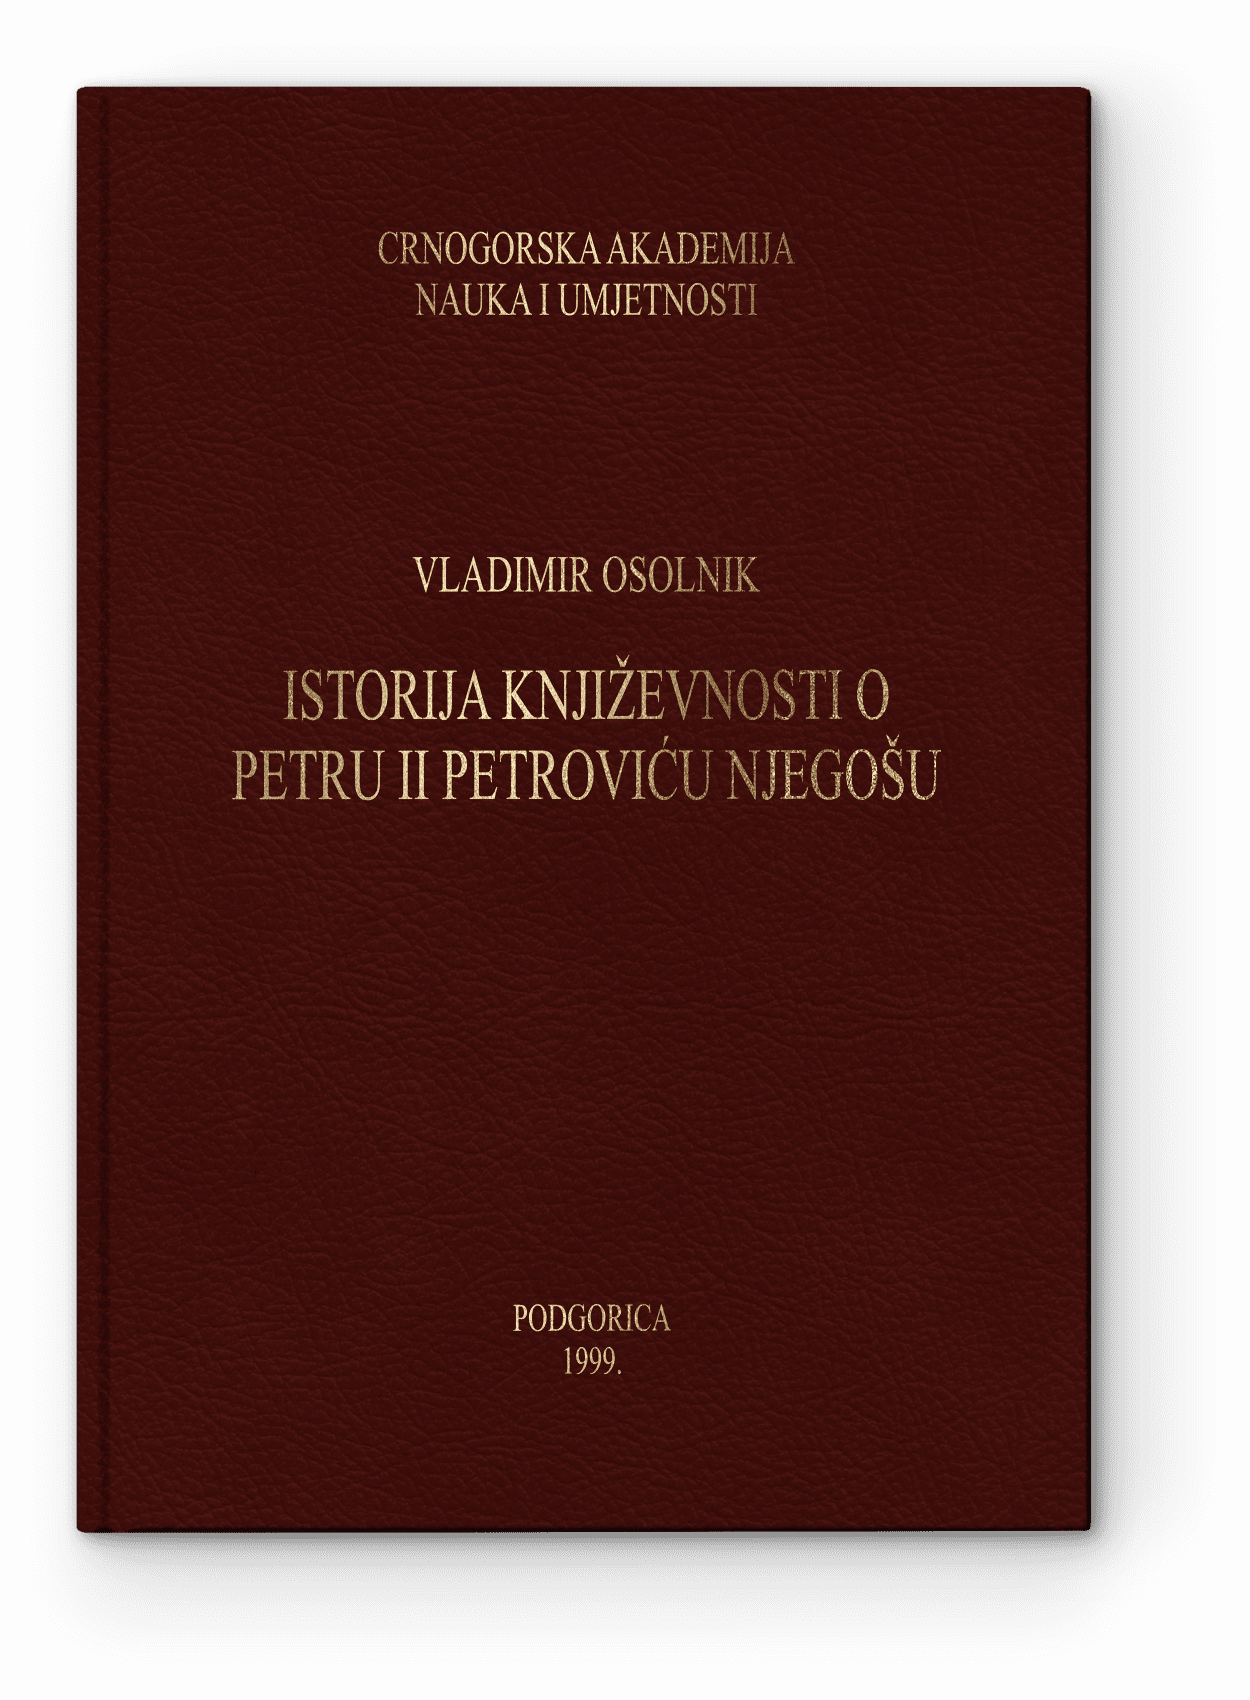 Istorija književnosti o Petru II Petroviću Njegošu